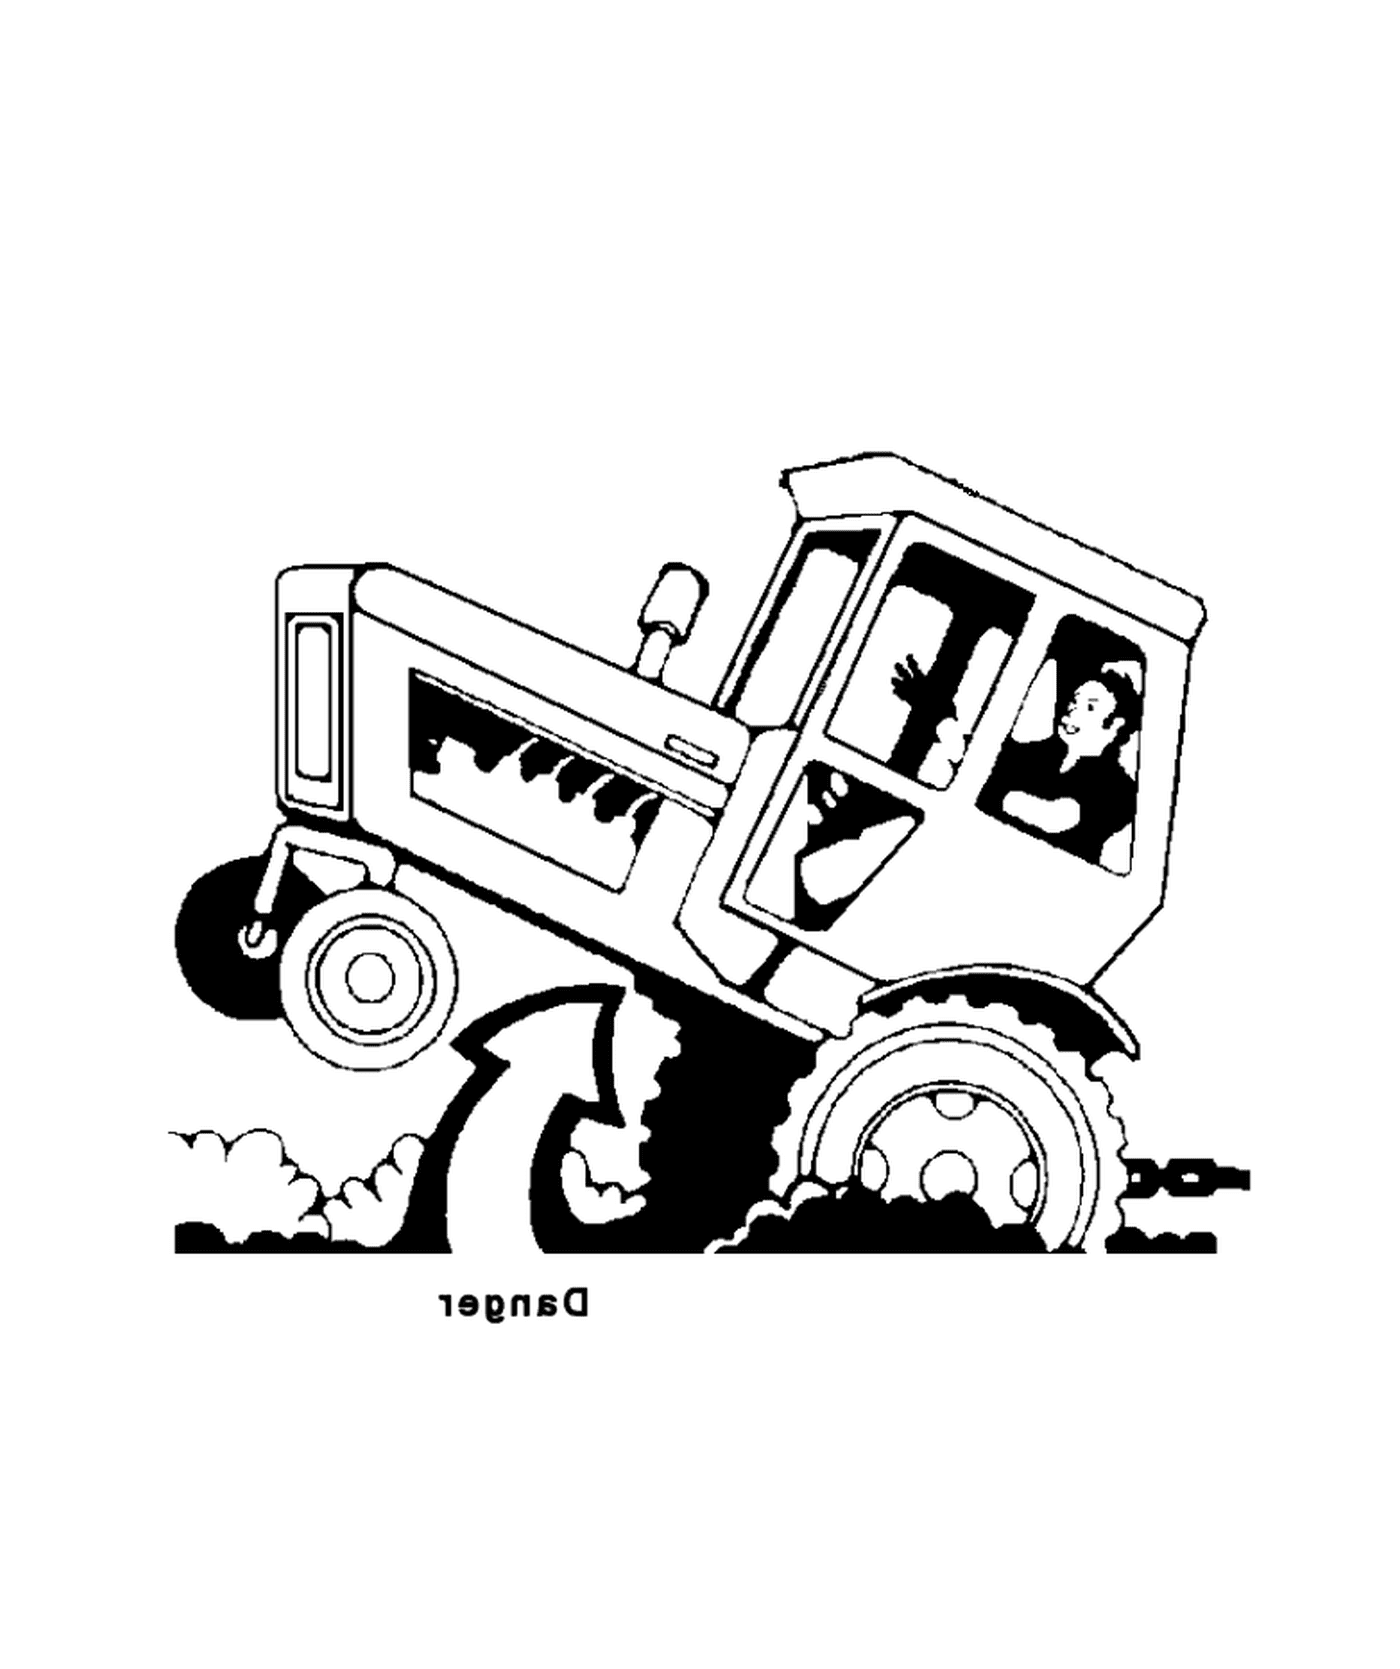  Агильный и крепкий трактор 